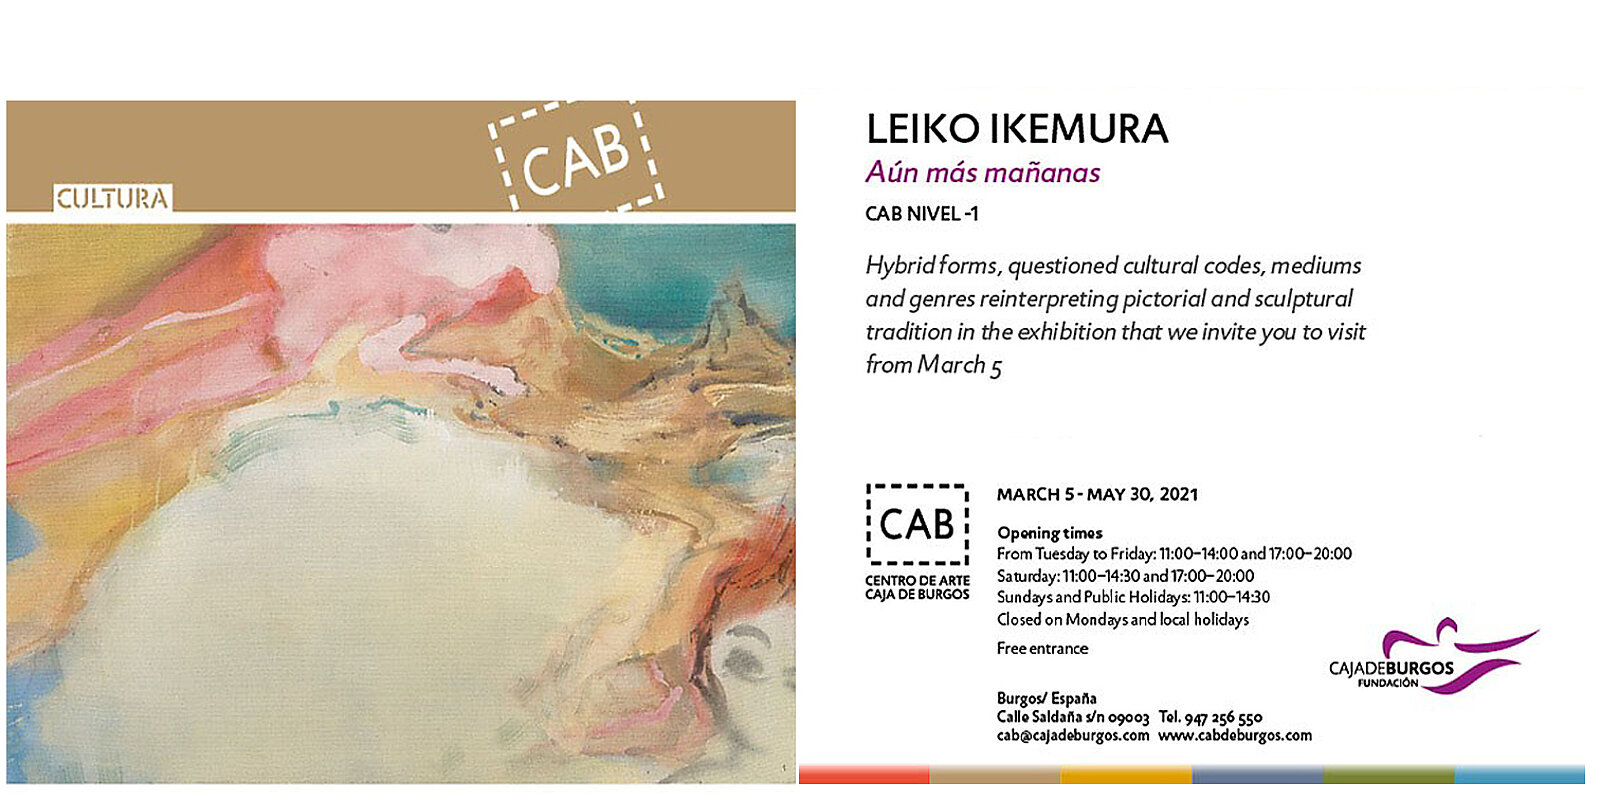 Einladung zur Ausstellung von Leiko Ikemura im Caja de Burgos CAB Art Center, Burgos, Spanien